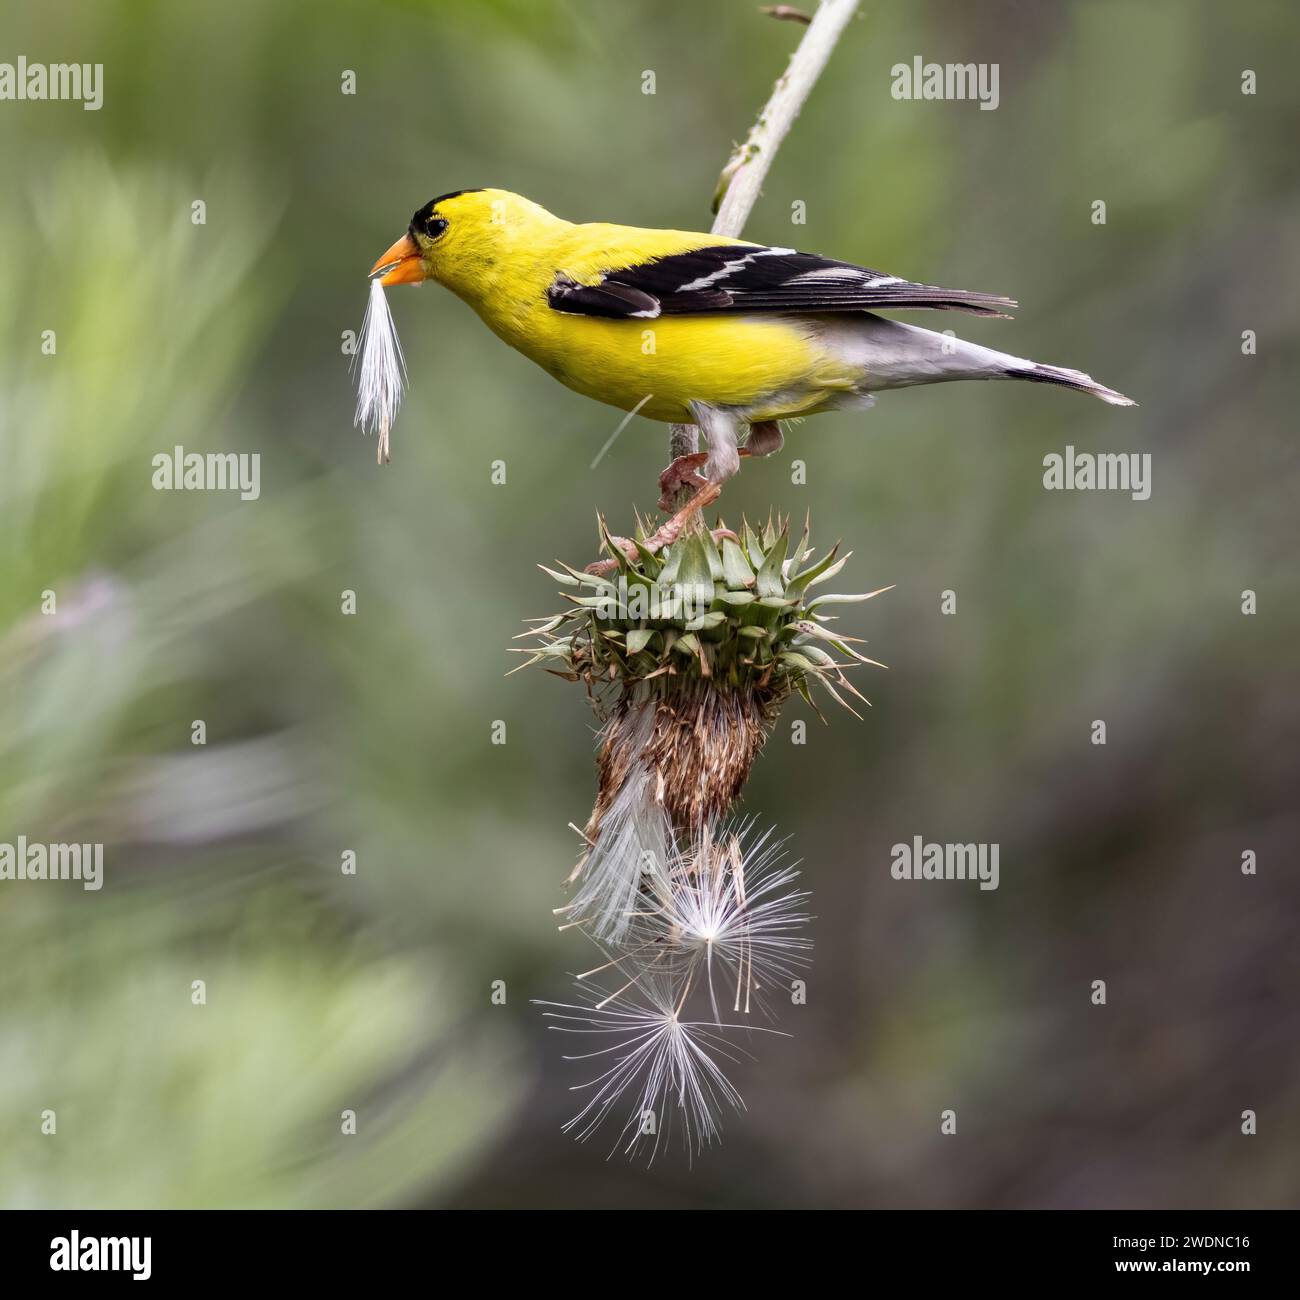 Porträt eines amerikanischen Goldfinchs, der einen Distelhaufen im Schnabel hält, während er auf einer umgedrehten Distelpflanze mit kaskadierenden Disteln balanciert ist. Stockfoto